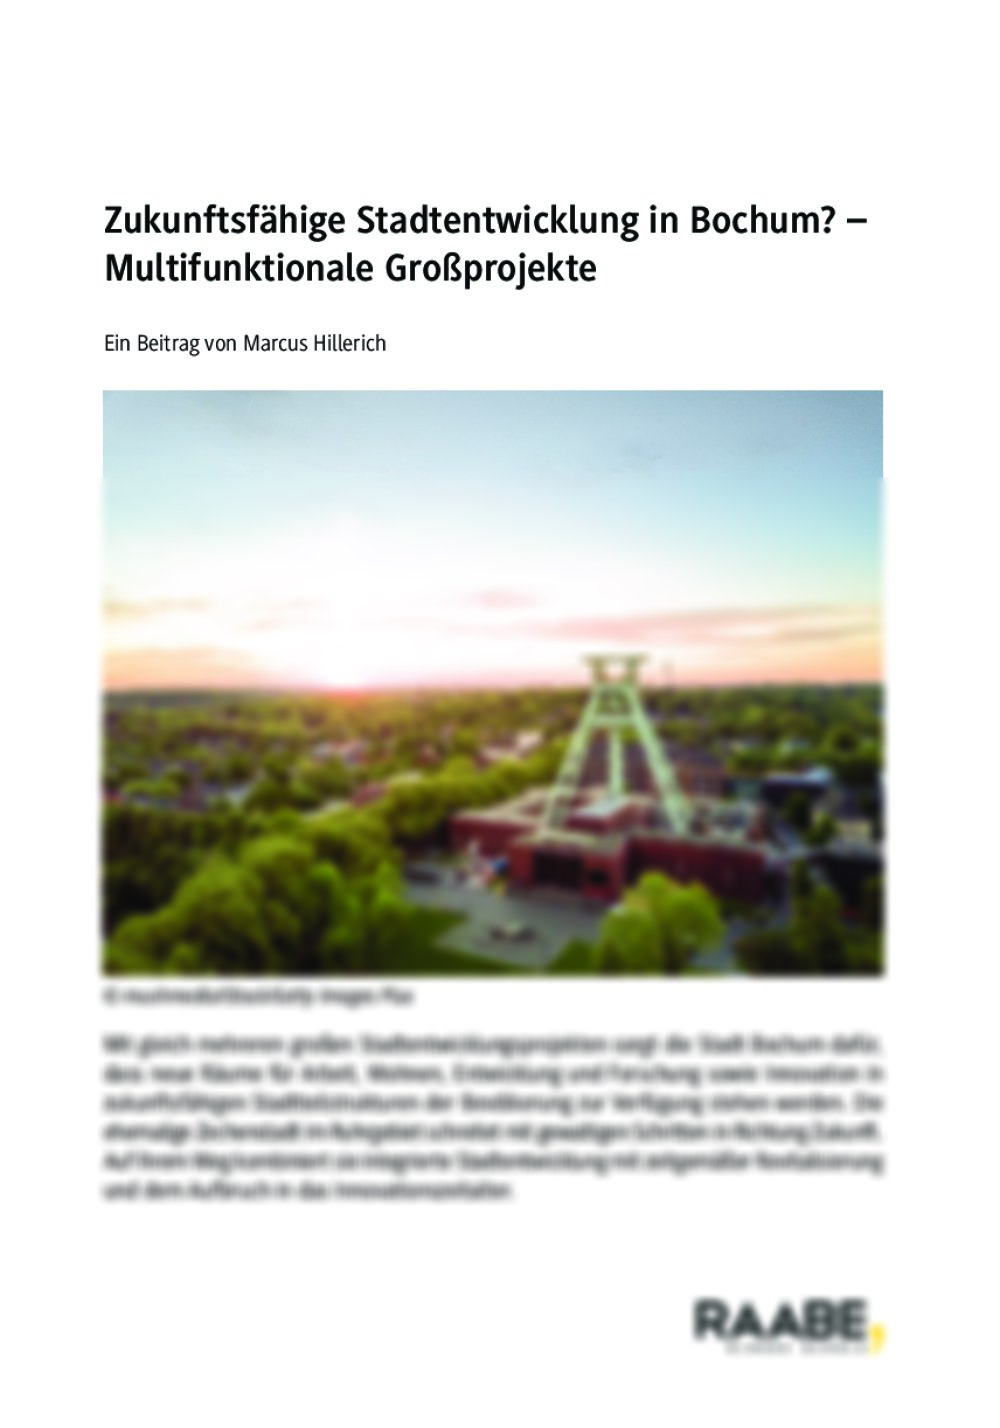 Zukunftsfähige Stadtentwicklung in Bochum? - Seite 1